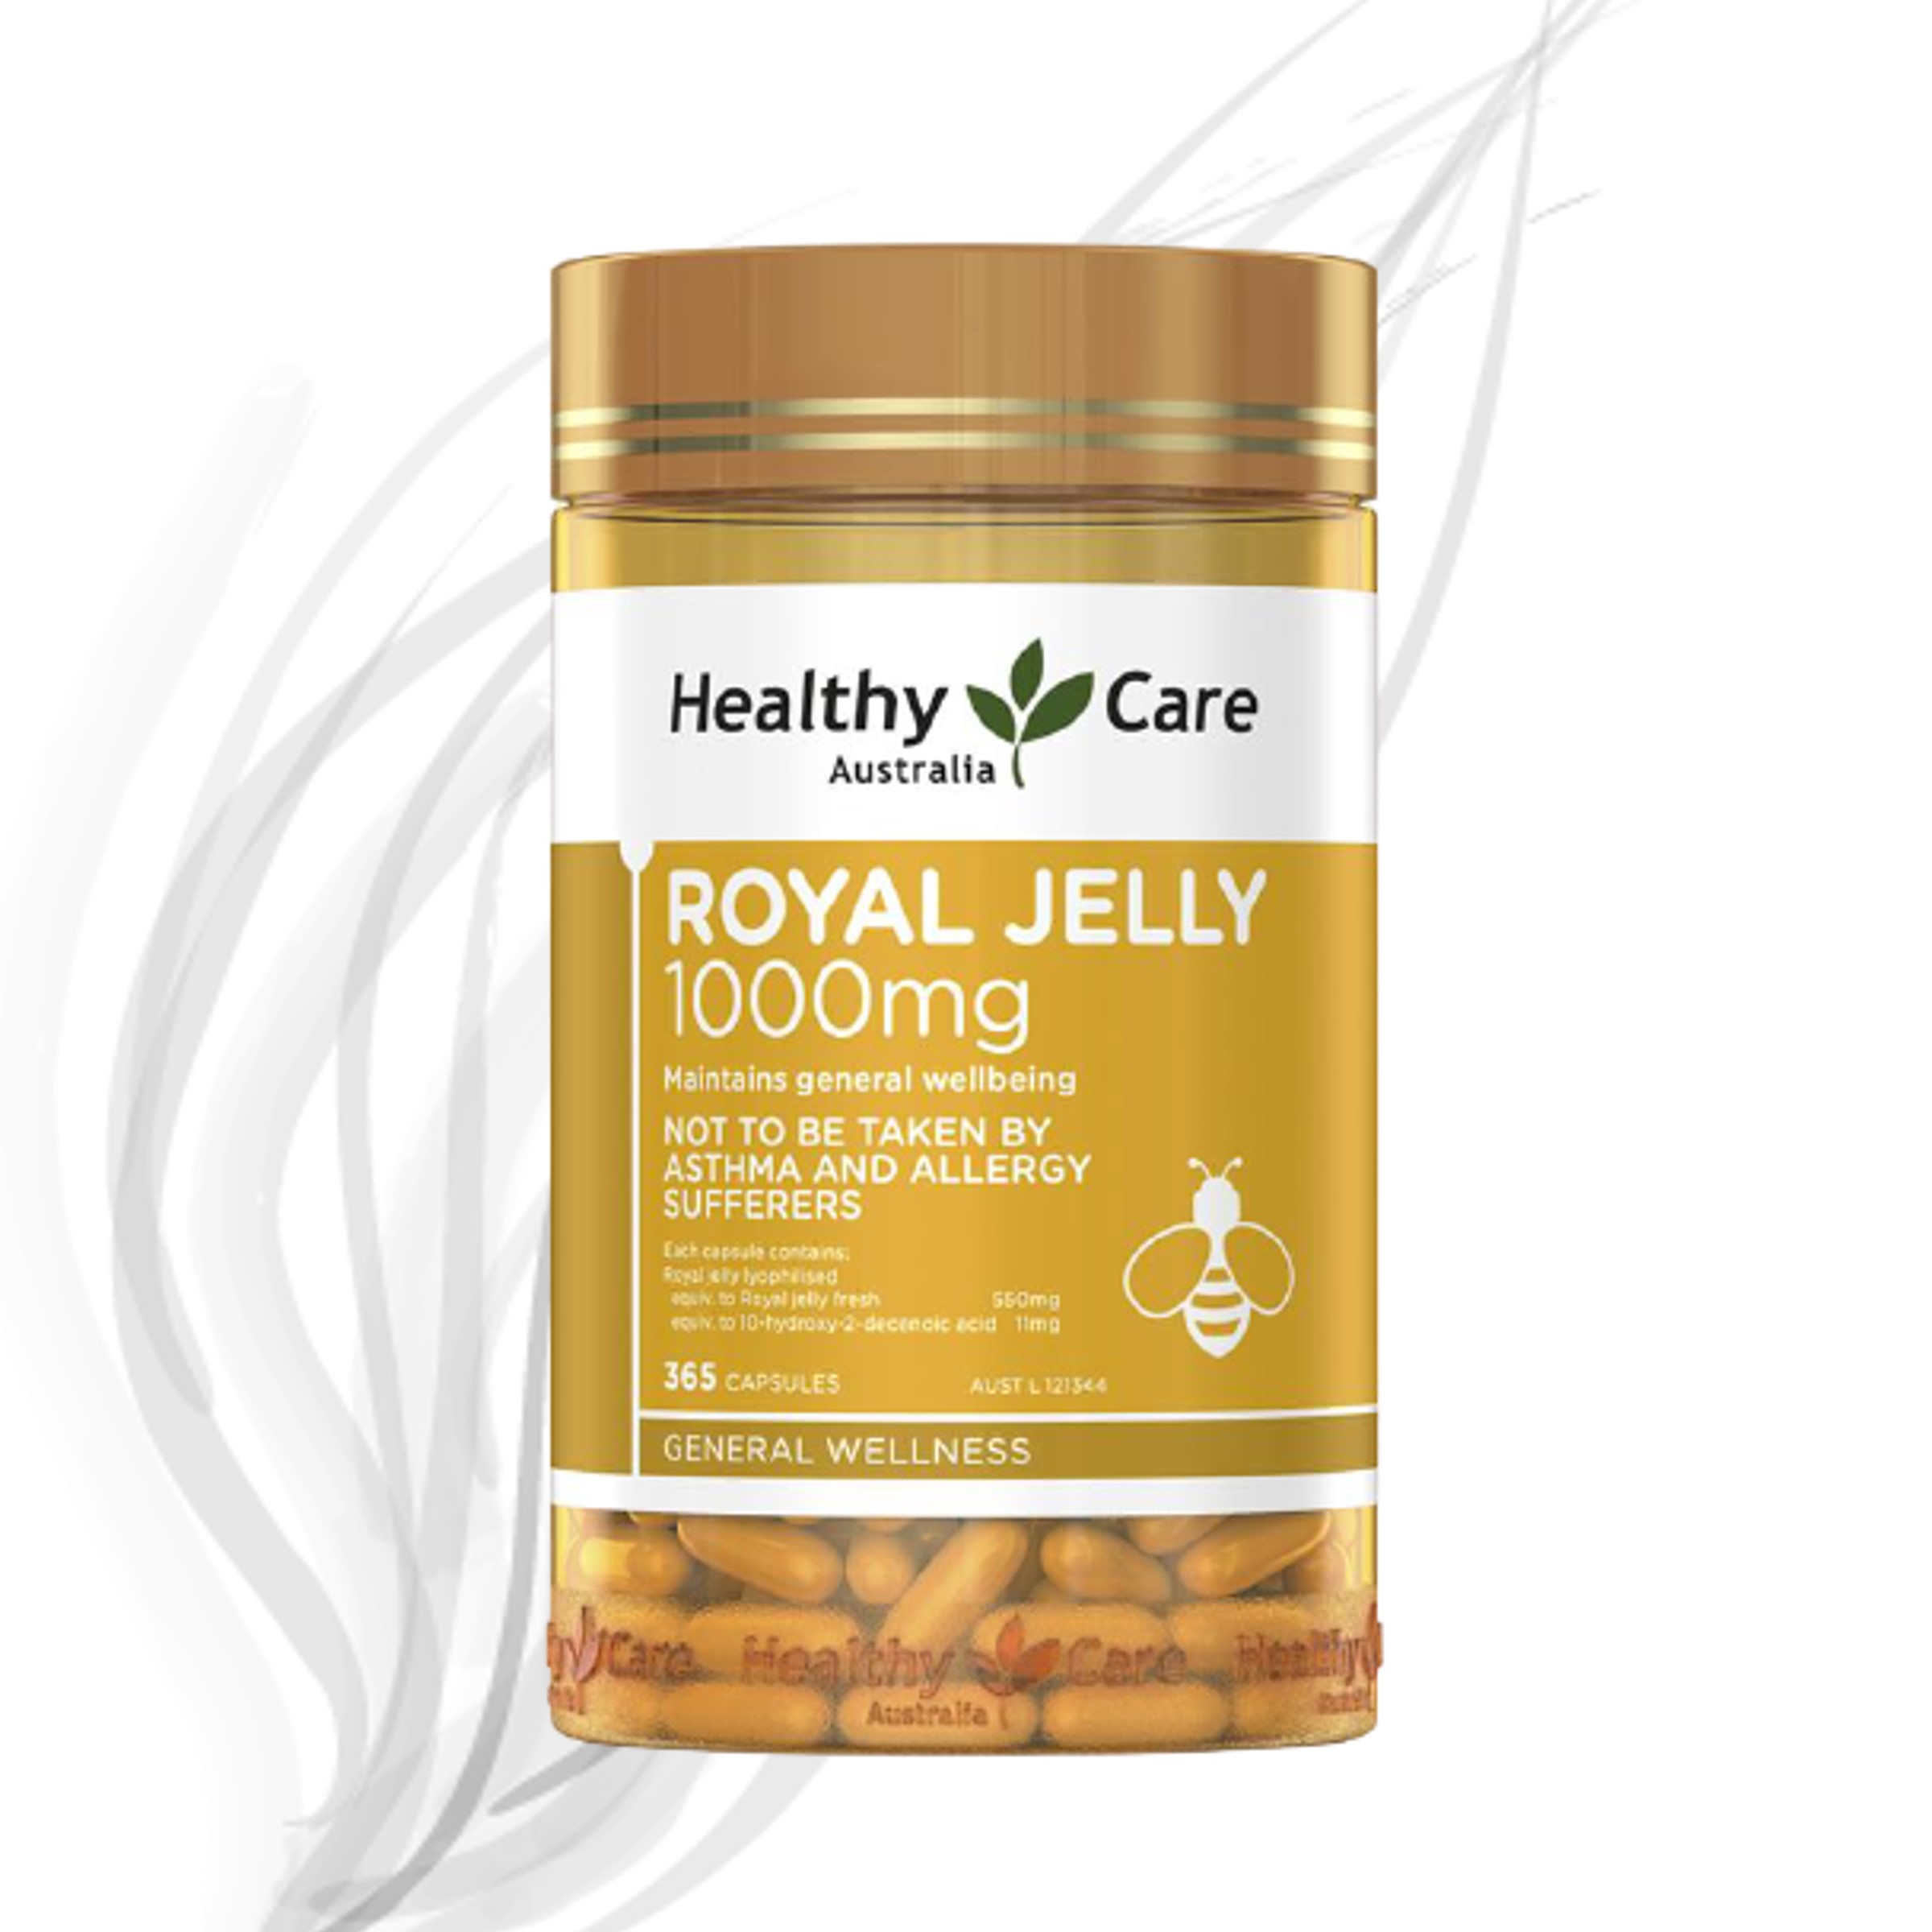 Sữa Ong Chúa Healthy Care Royal Jelly 1000mg 365 Viên Úc